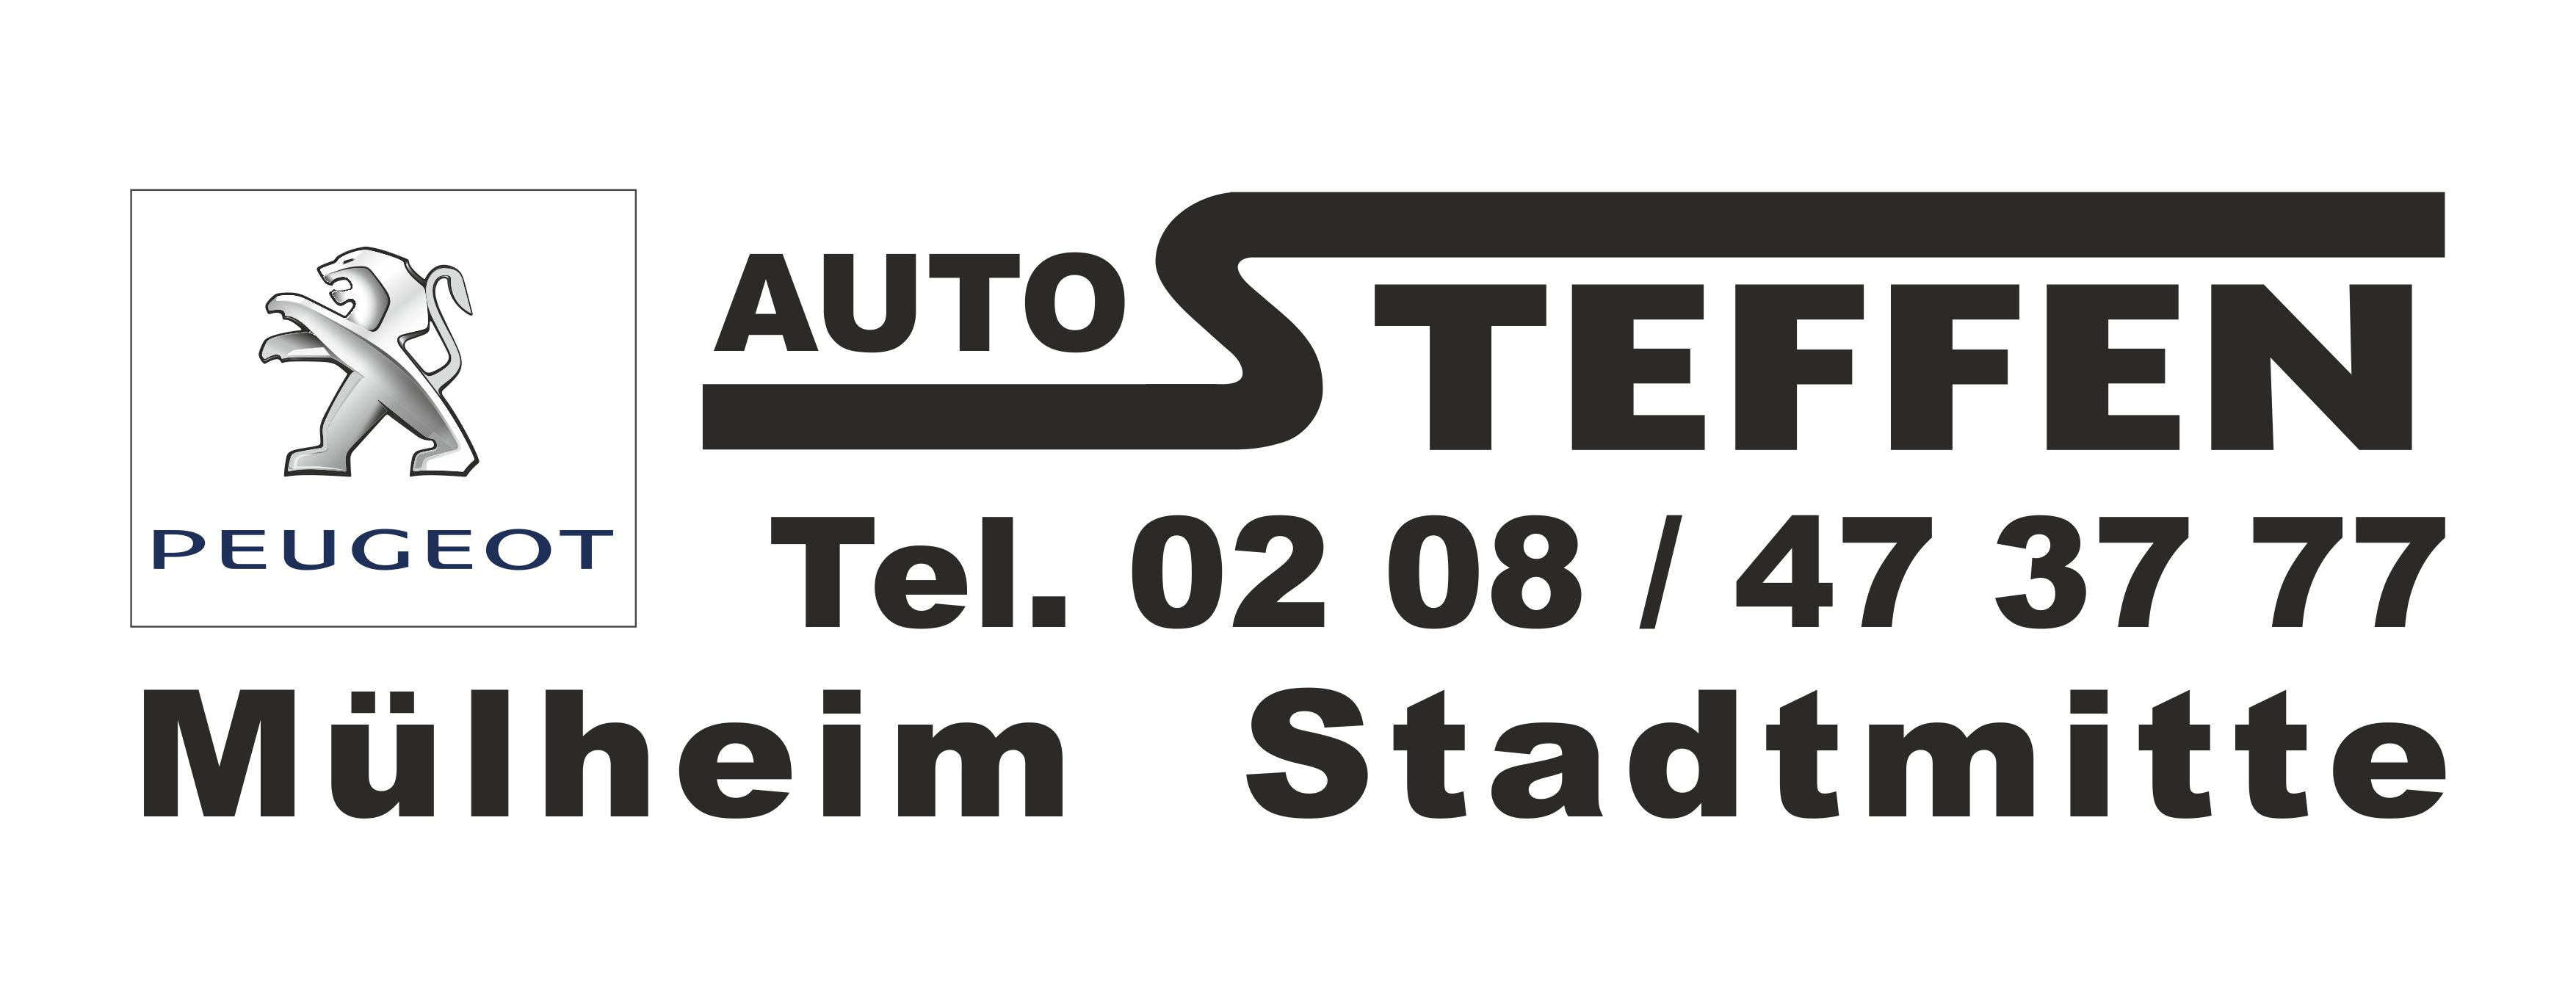 Auto Steffen GmbH, Charlottenstraße 80 in Mülheim an der Ruhr